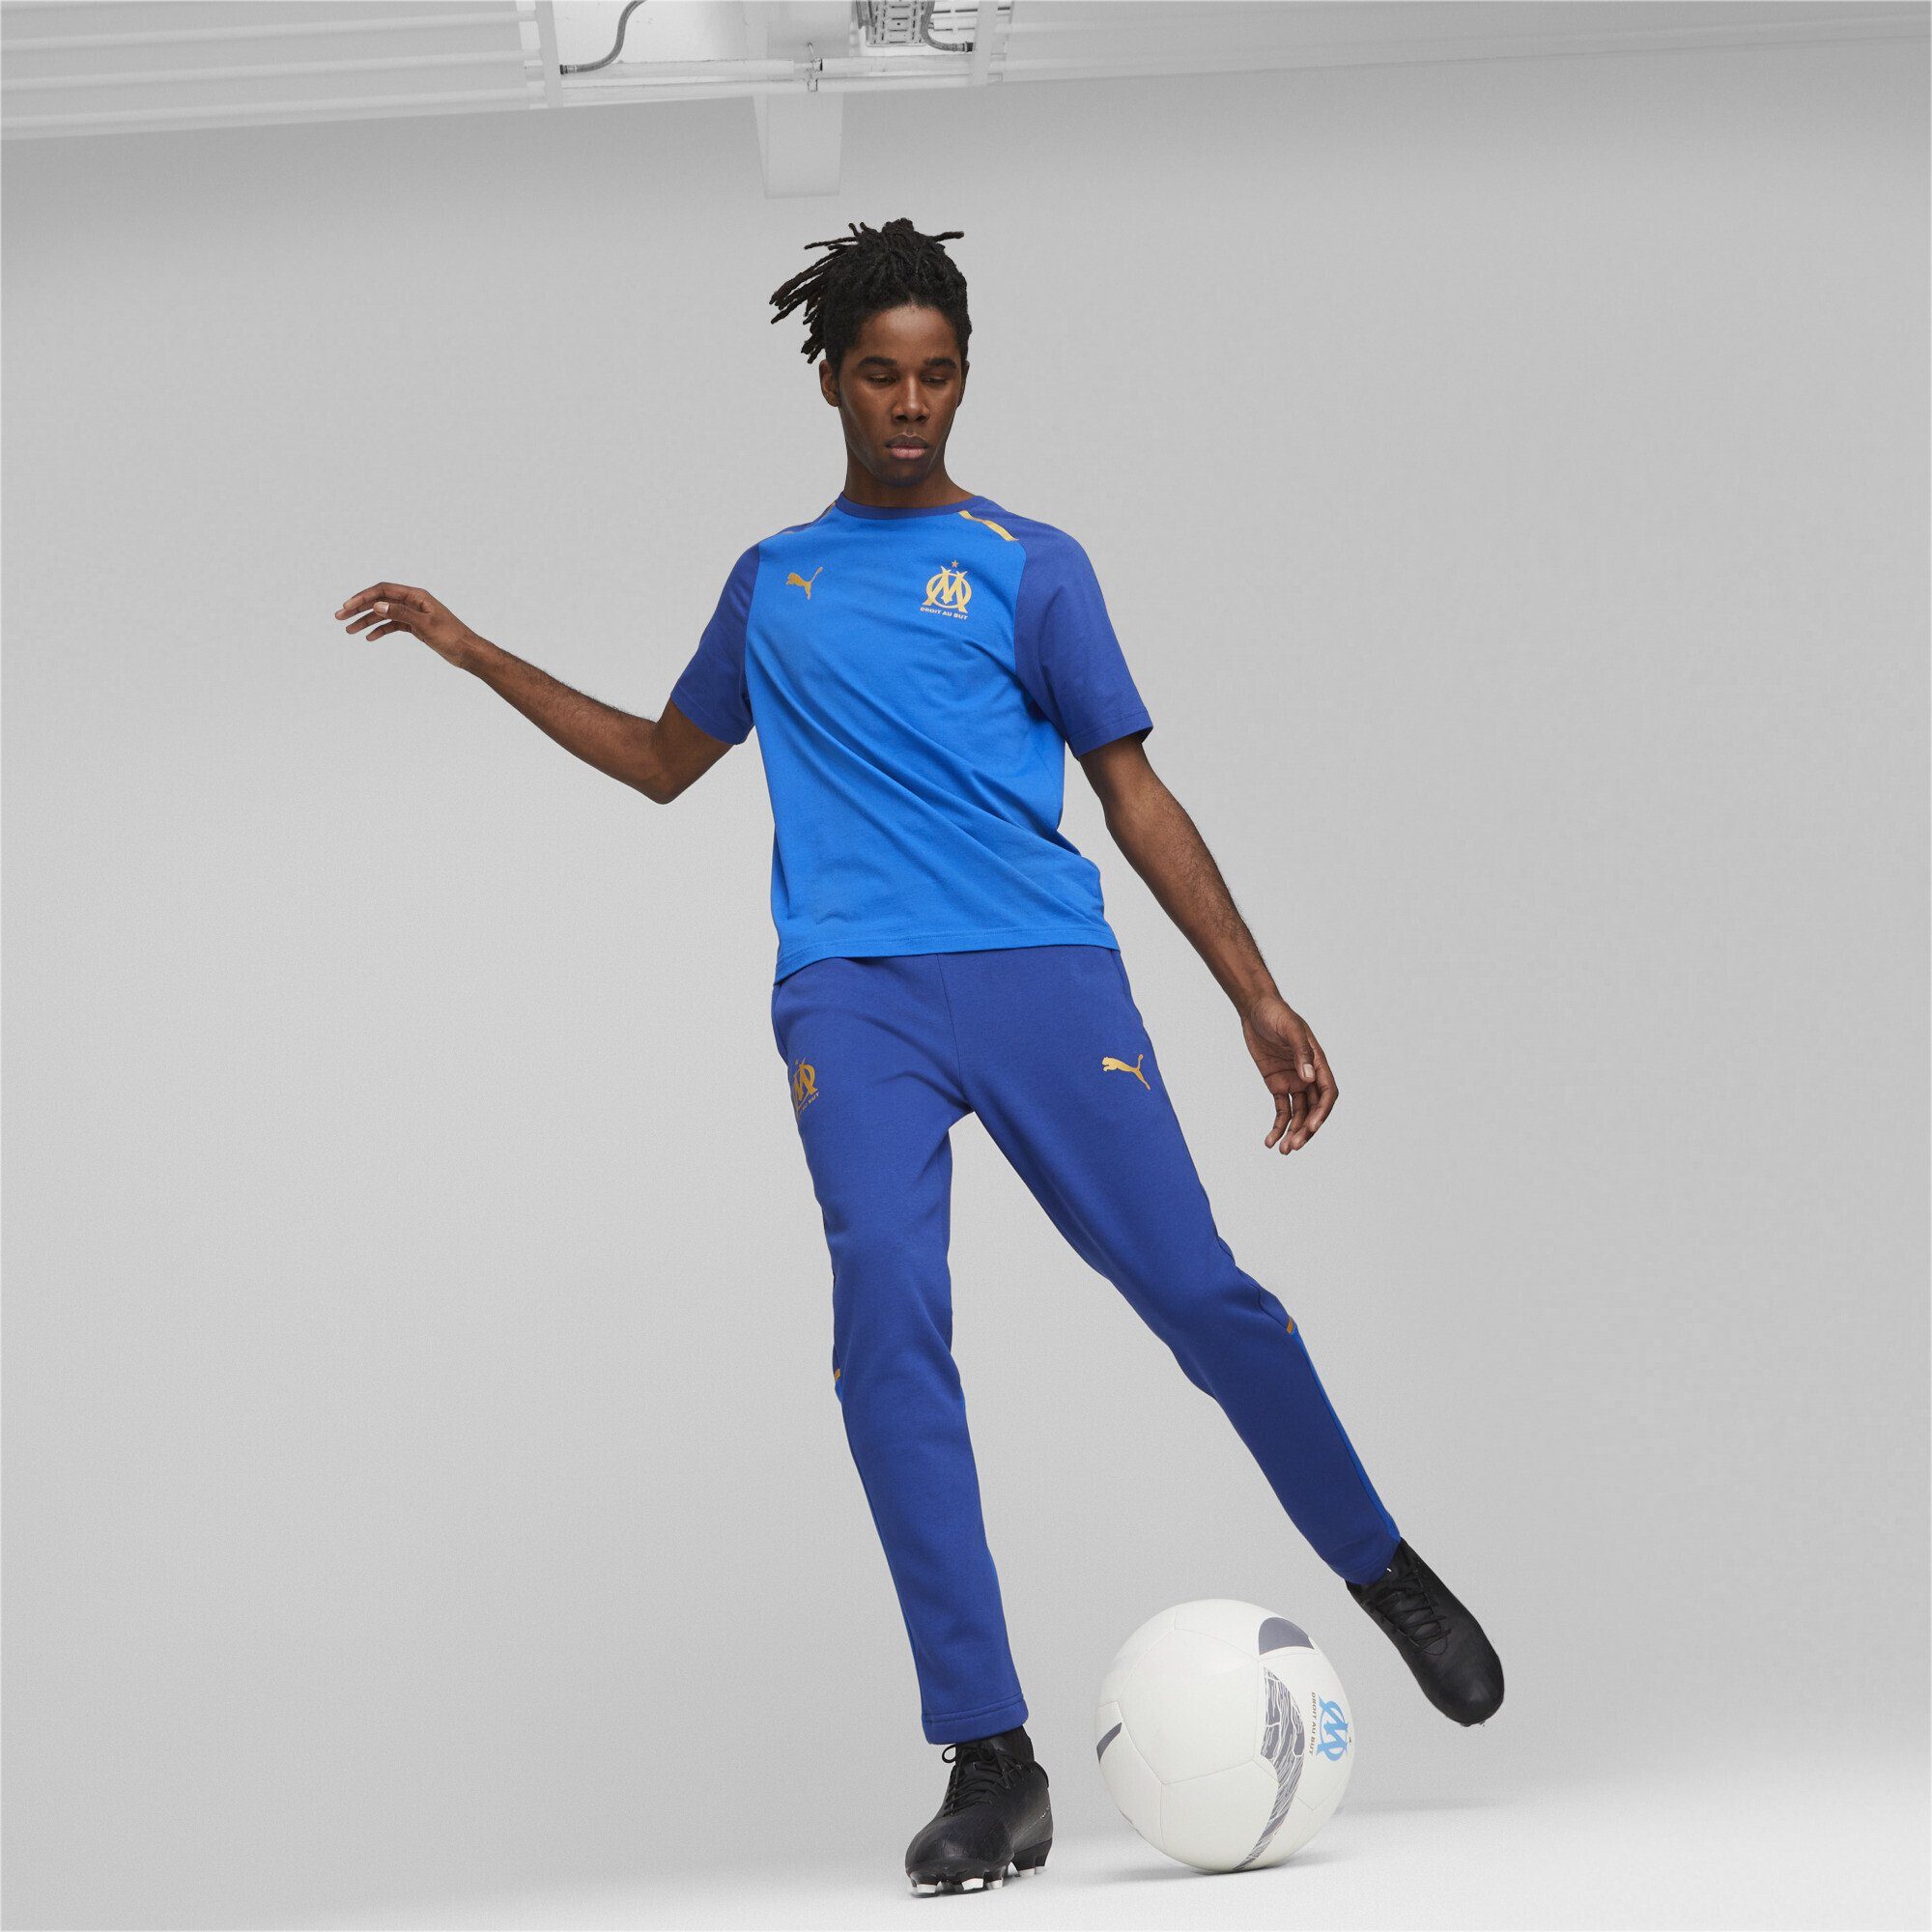 PUMA T-Shirt Olympique de Marseille Royal Team Clyde Blue Casuals T-Shirt Herren Football